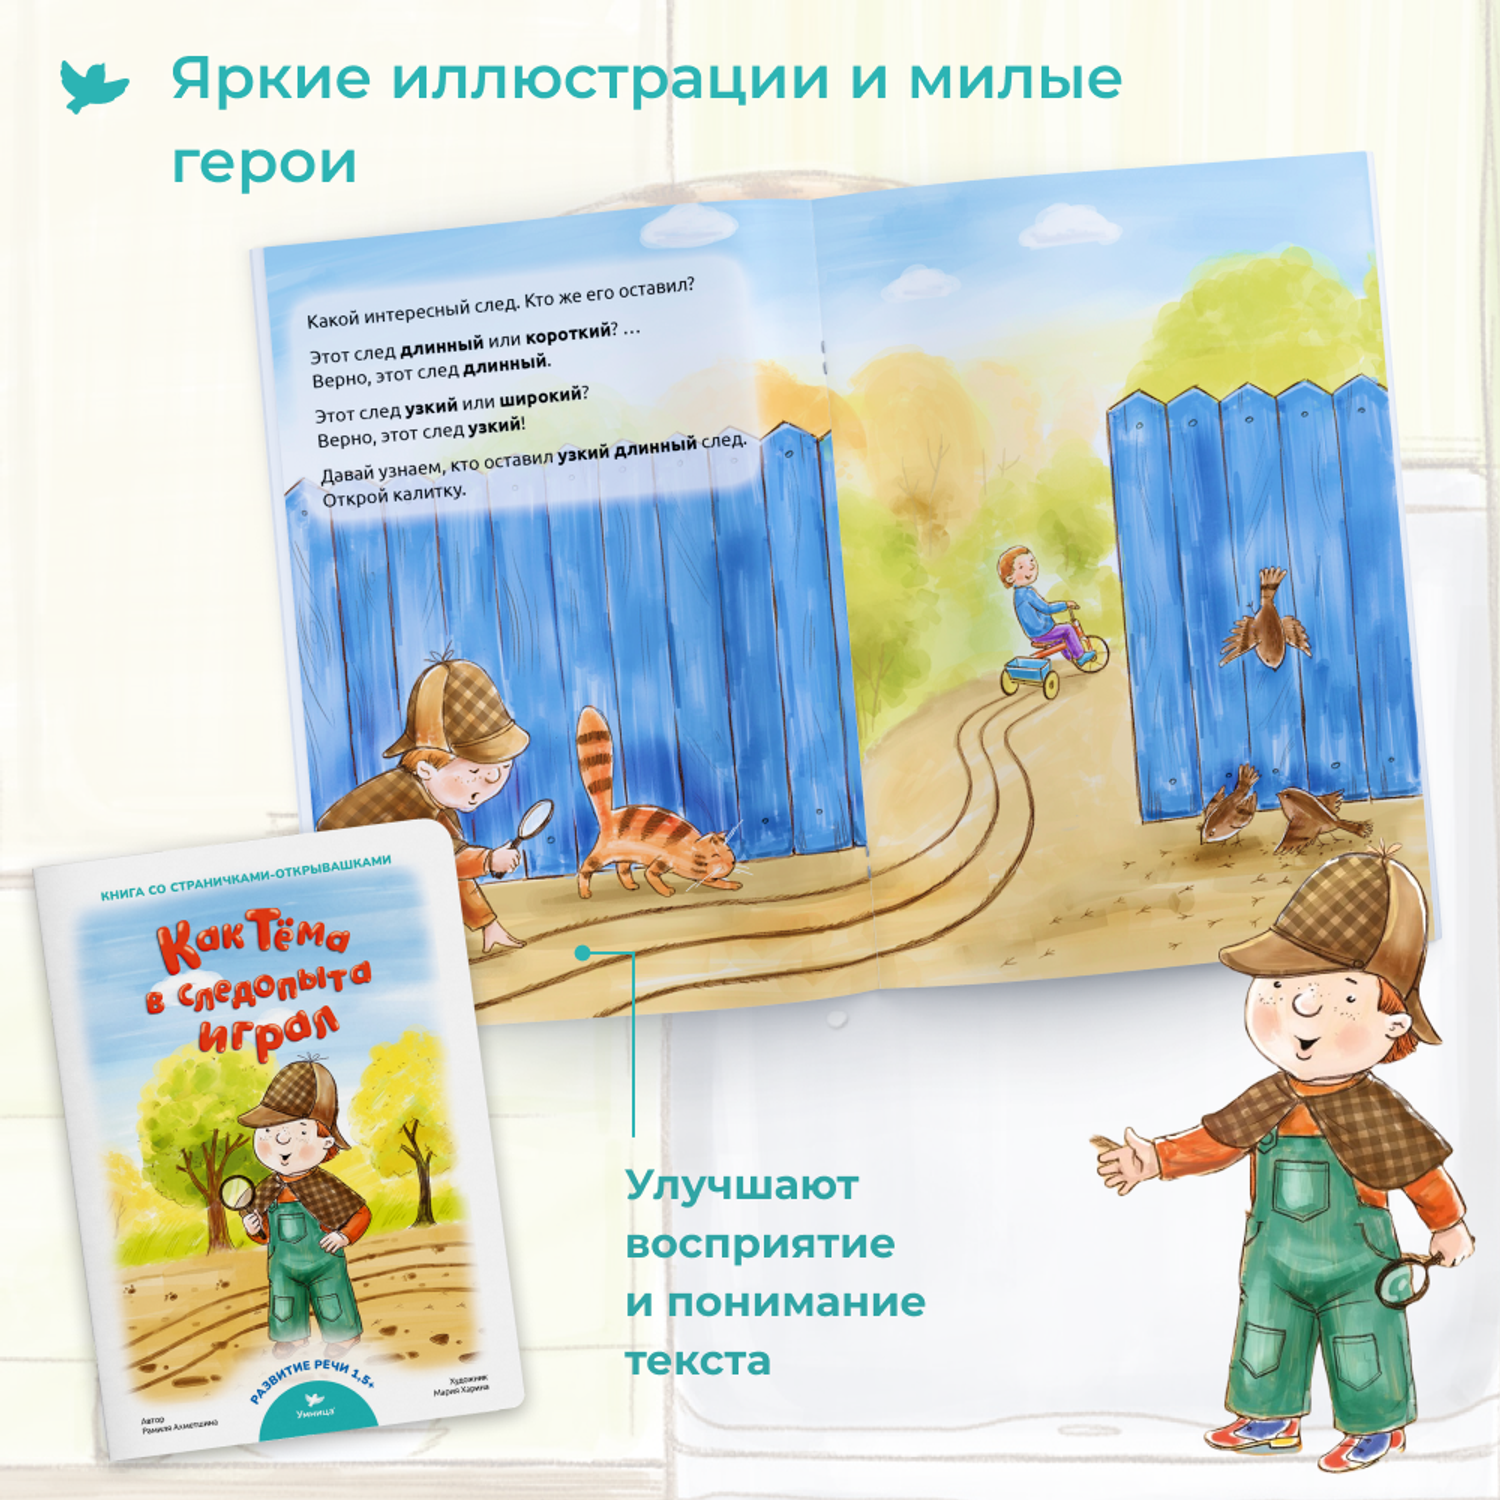 Набор книг Умница Книжки для малышей с игровыми страничками Развиваем речь ребёнка - фото 8